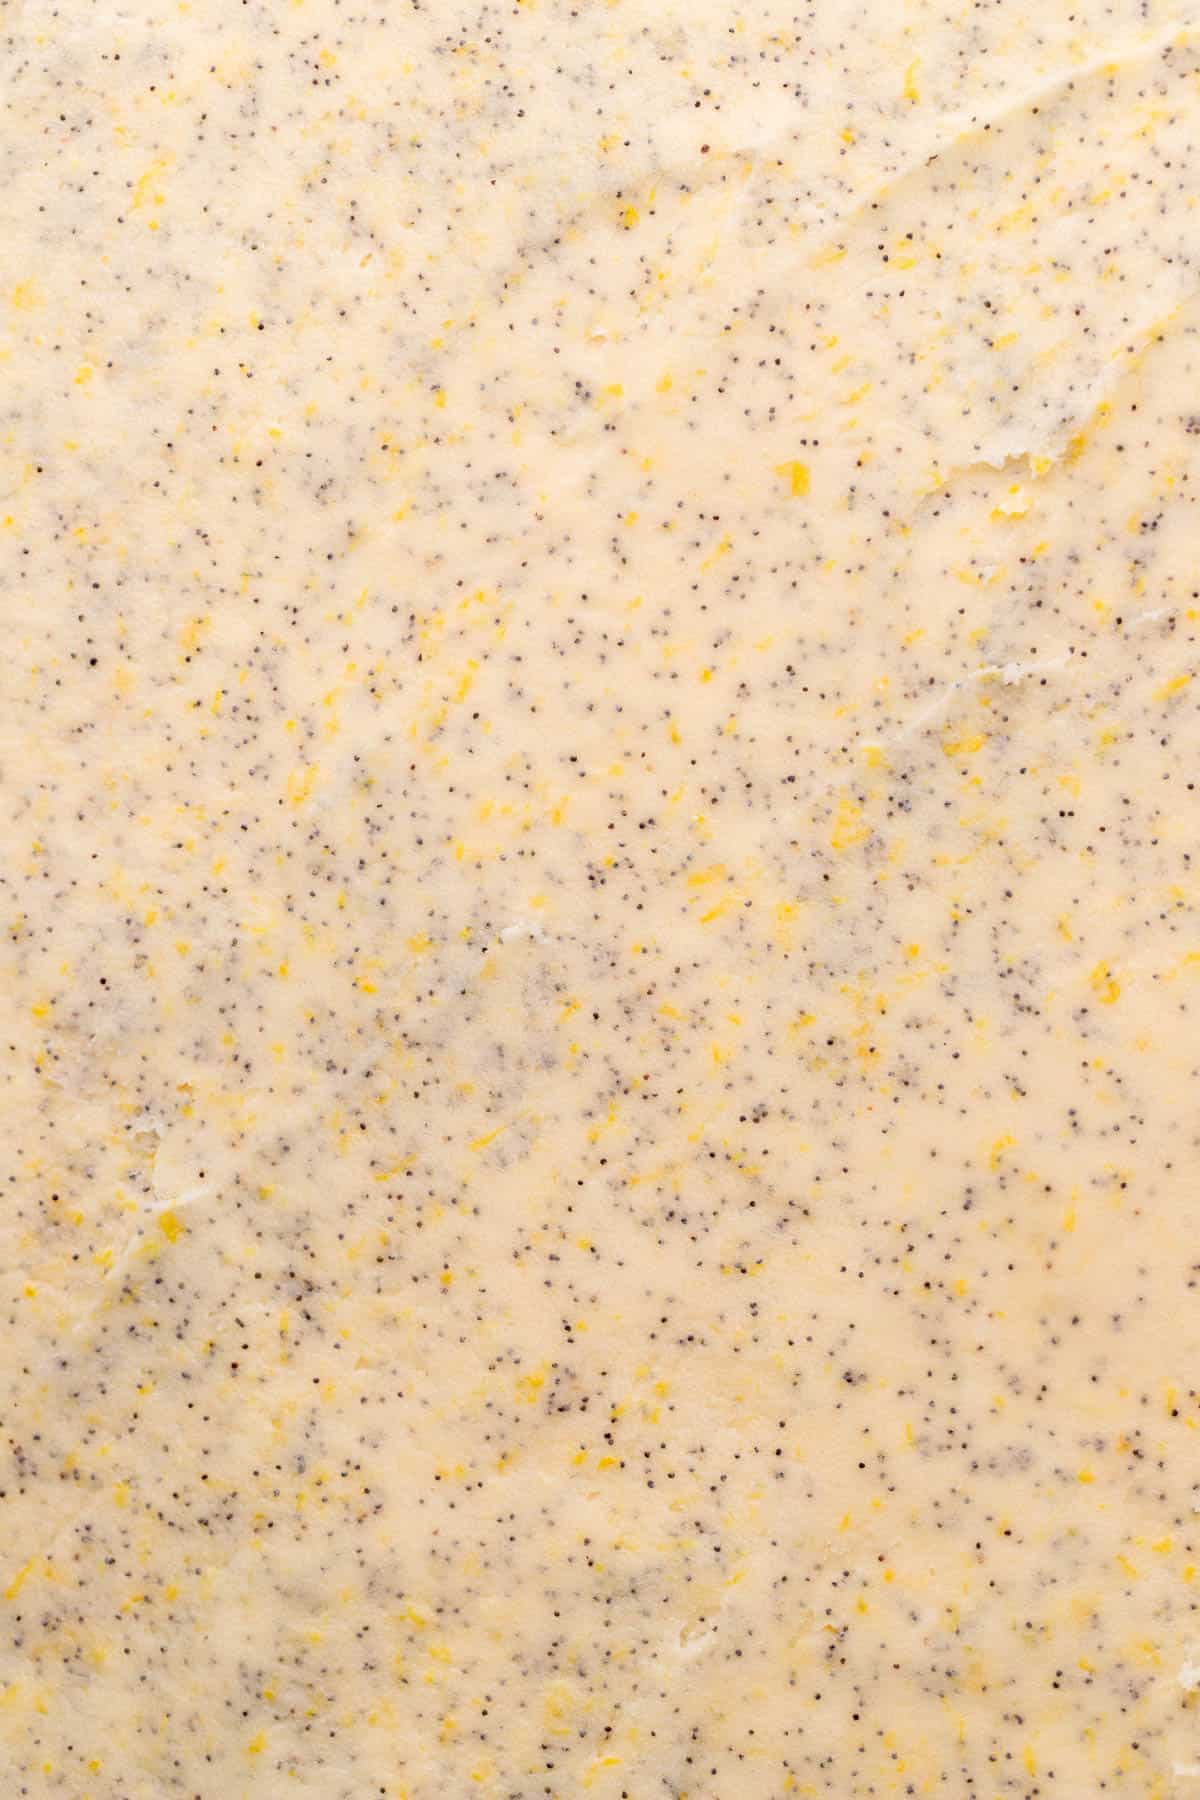 Lemon poppy filling over the dough.